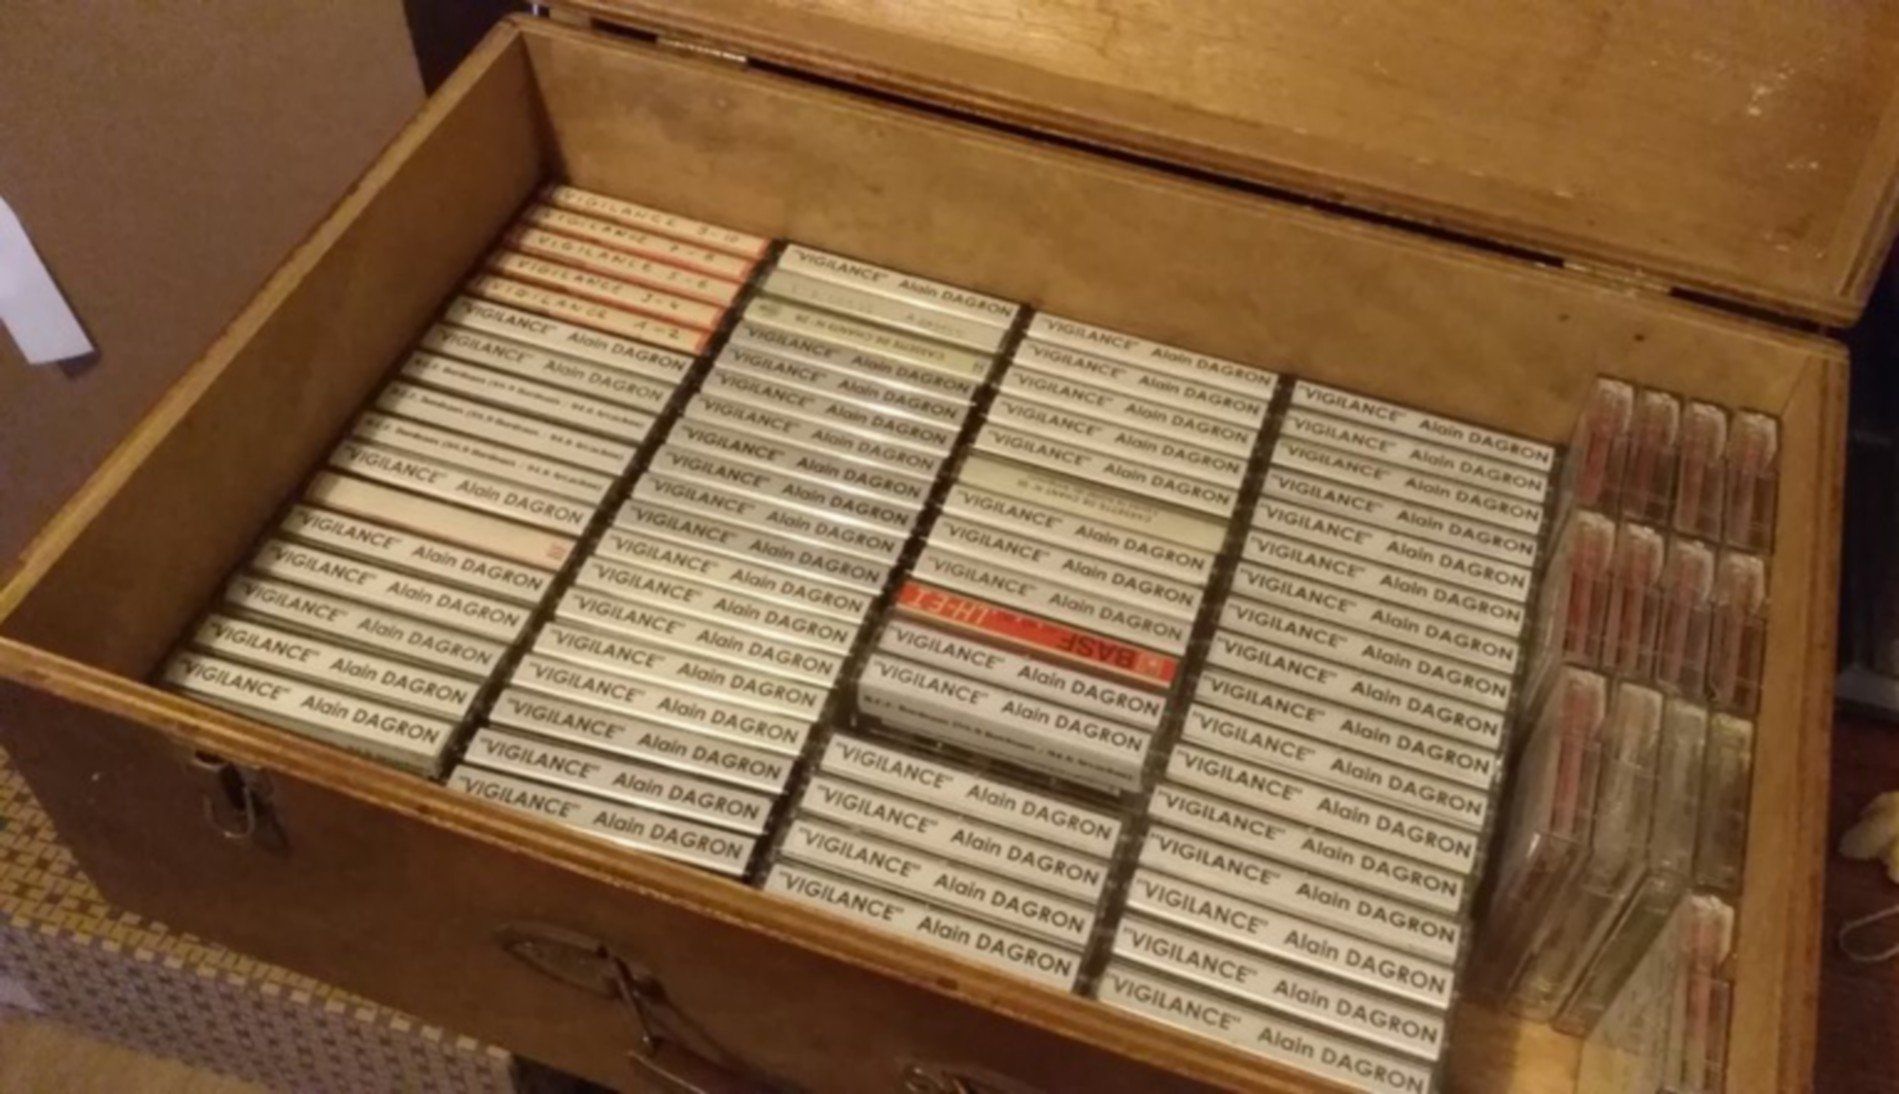 Archives sur cassettes audios de l'émission Vigilance